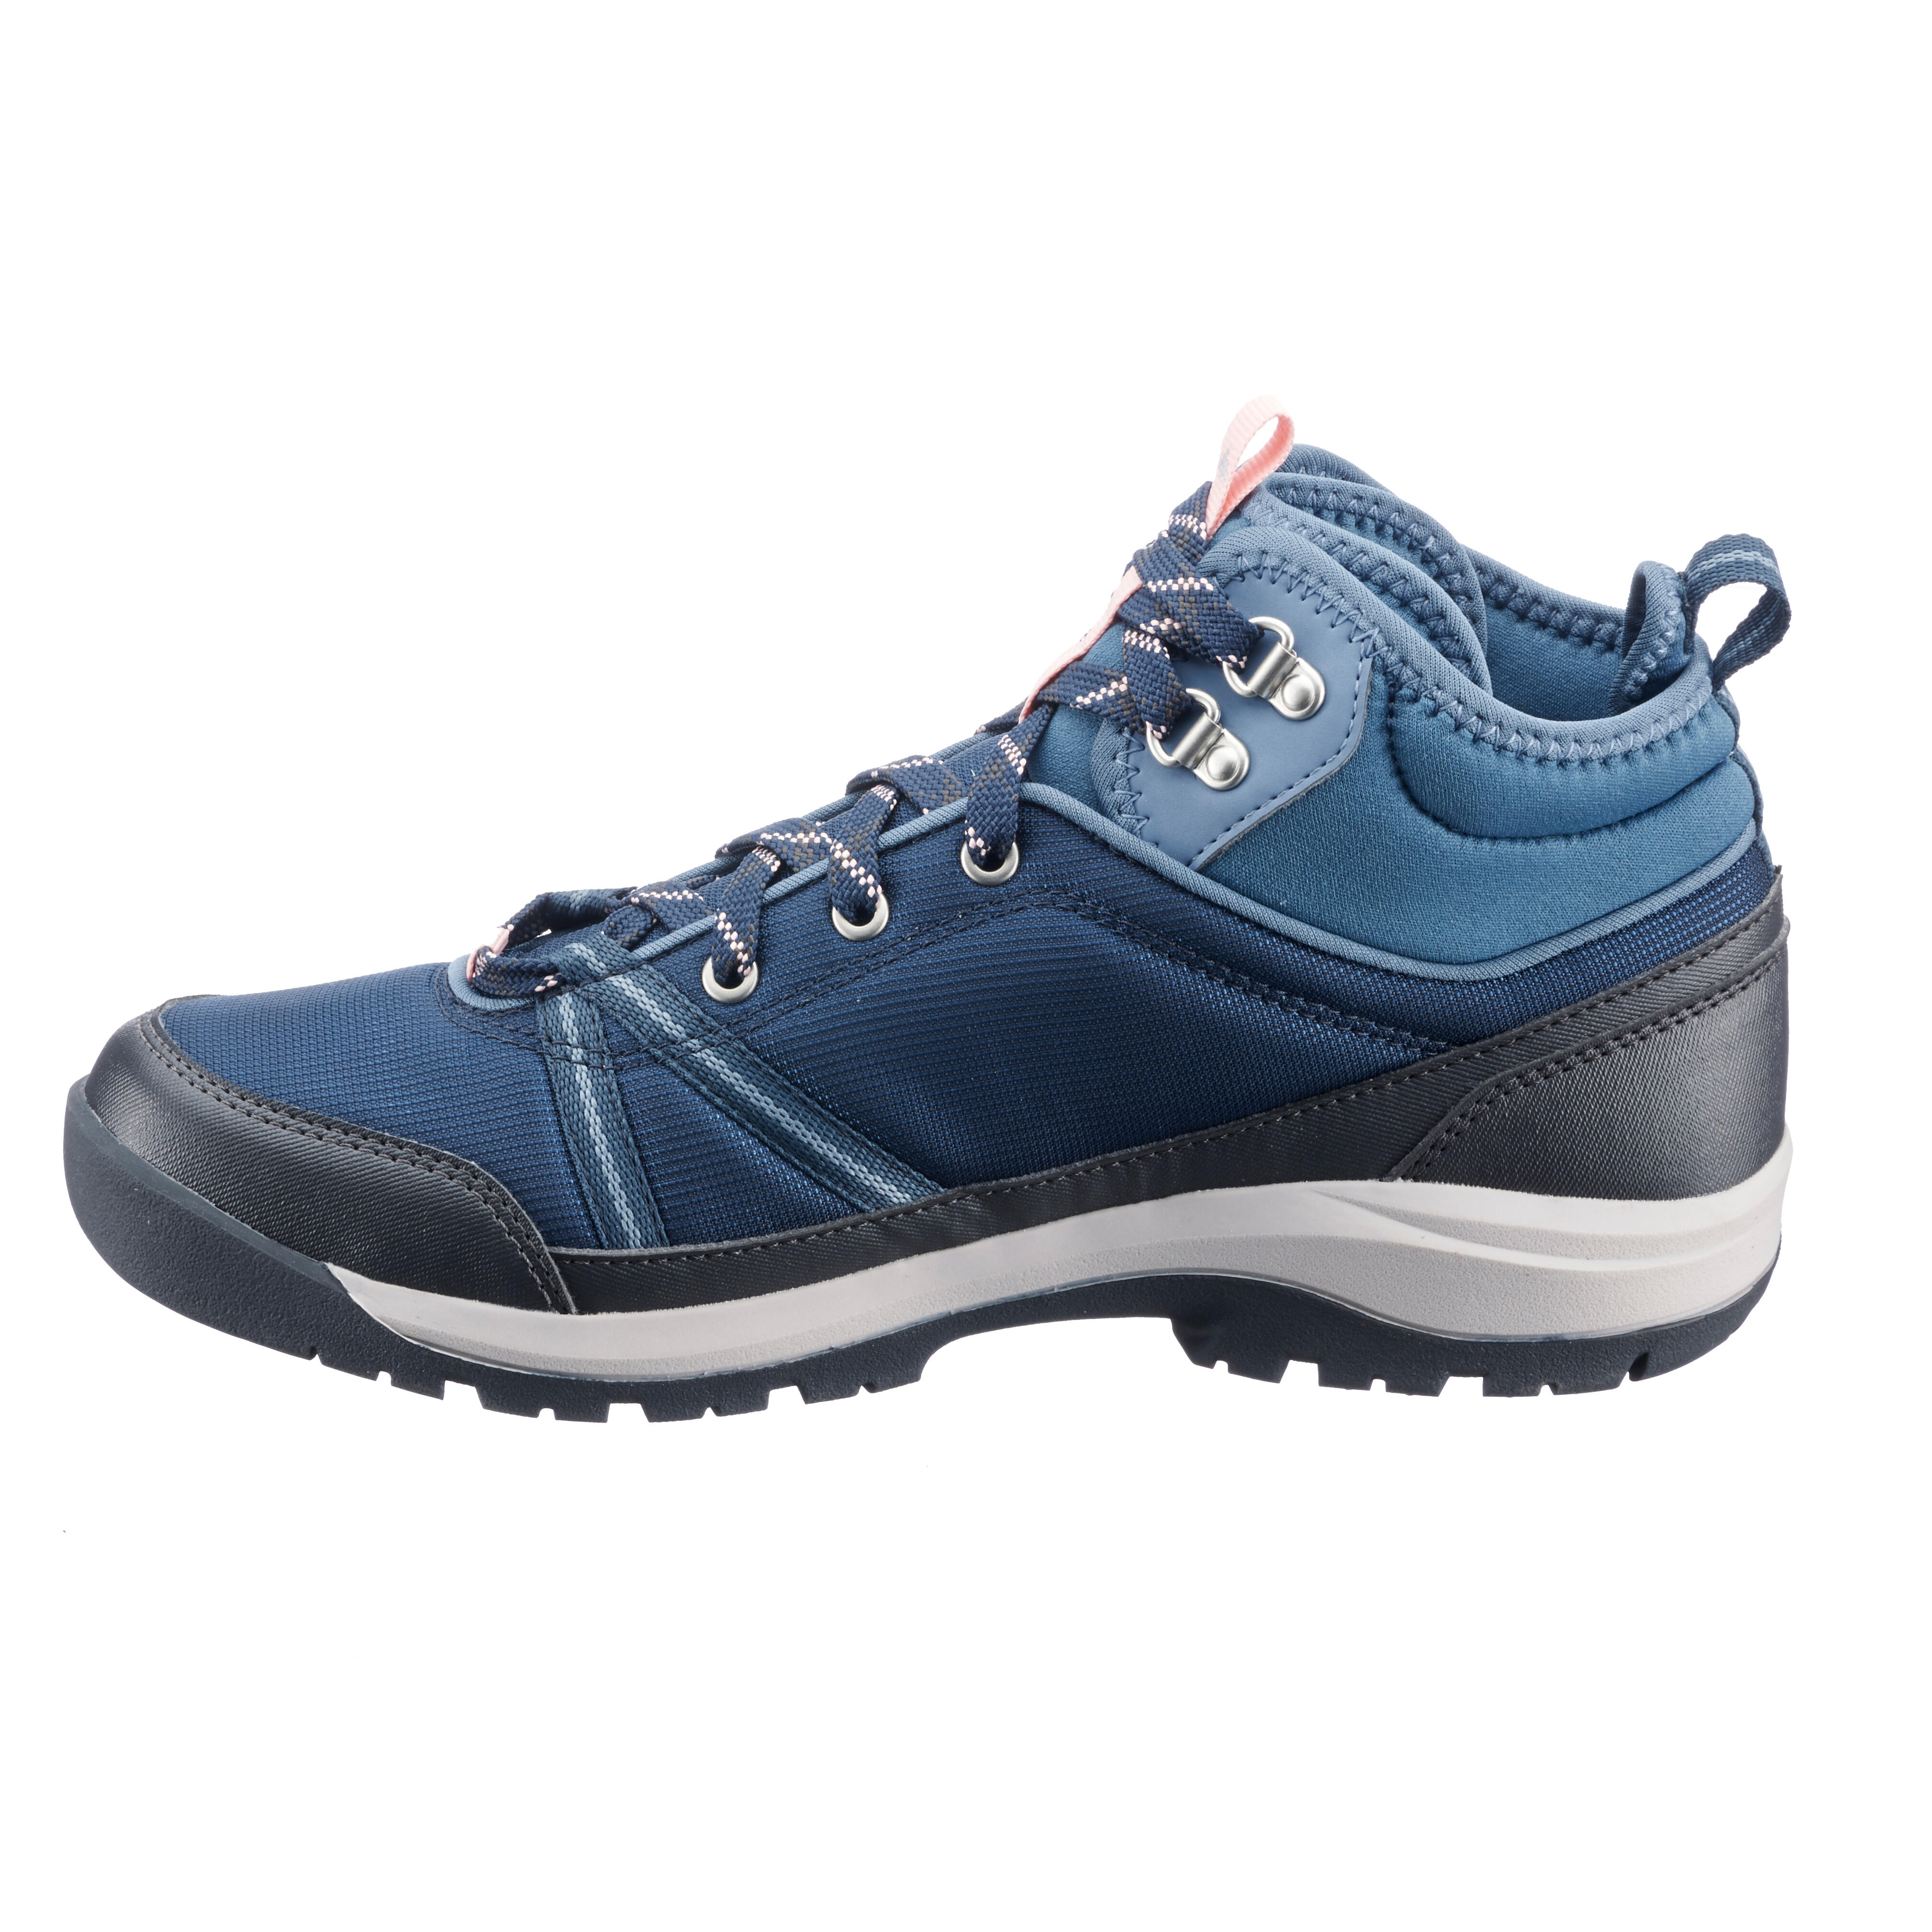 Women’s Waterproof Hiking Boots - NH 150 - QUECHUA